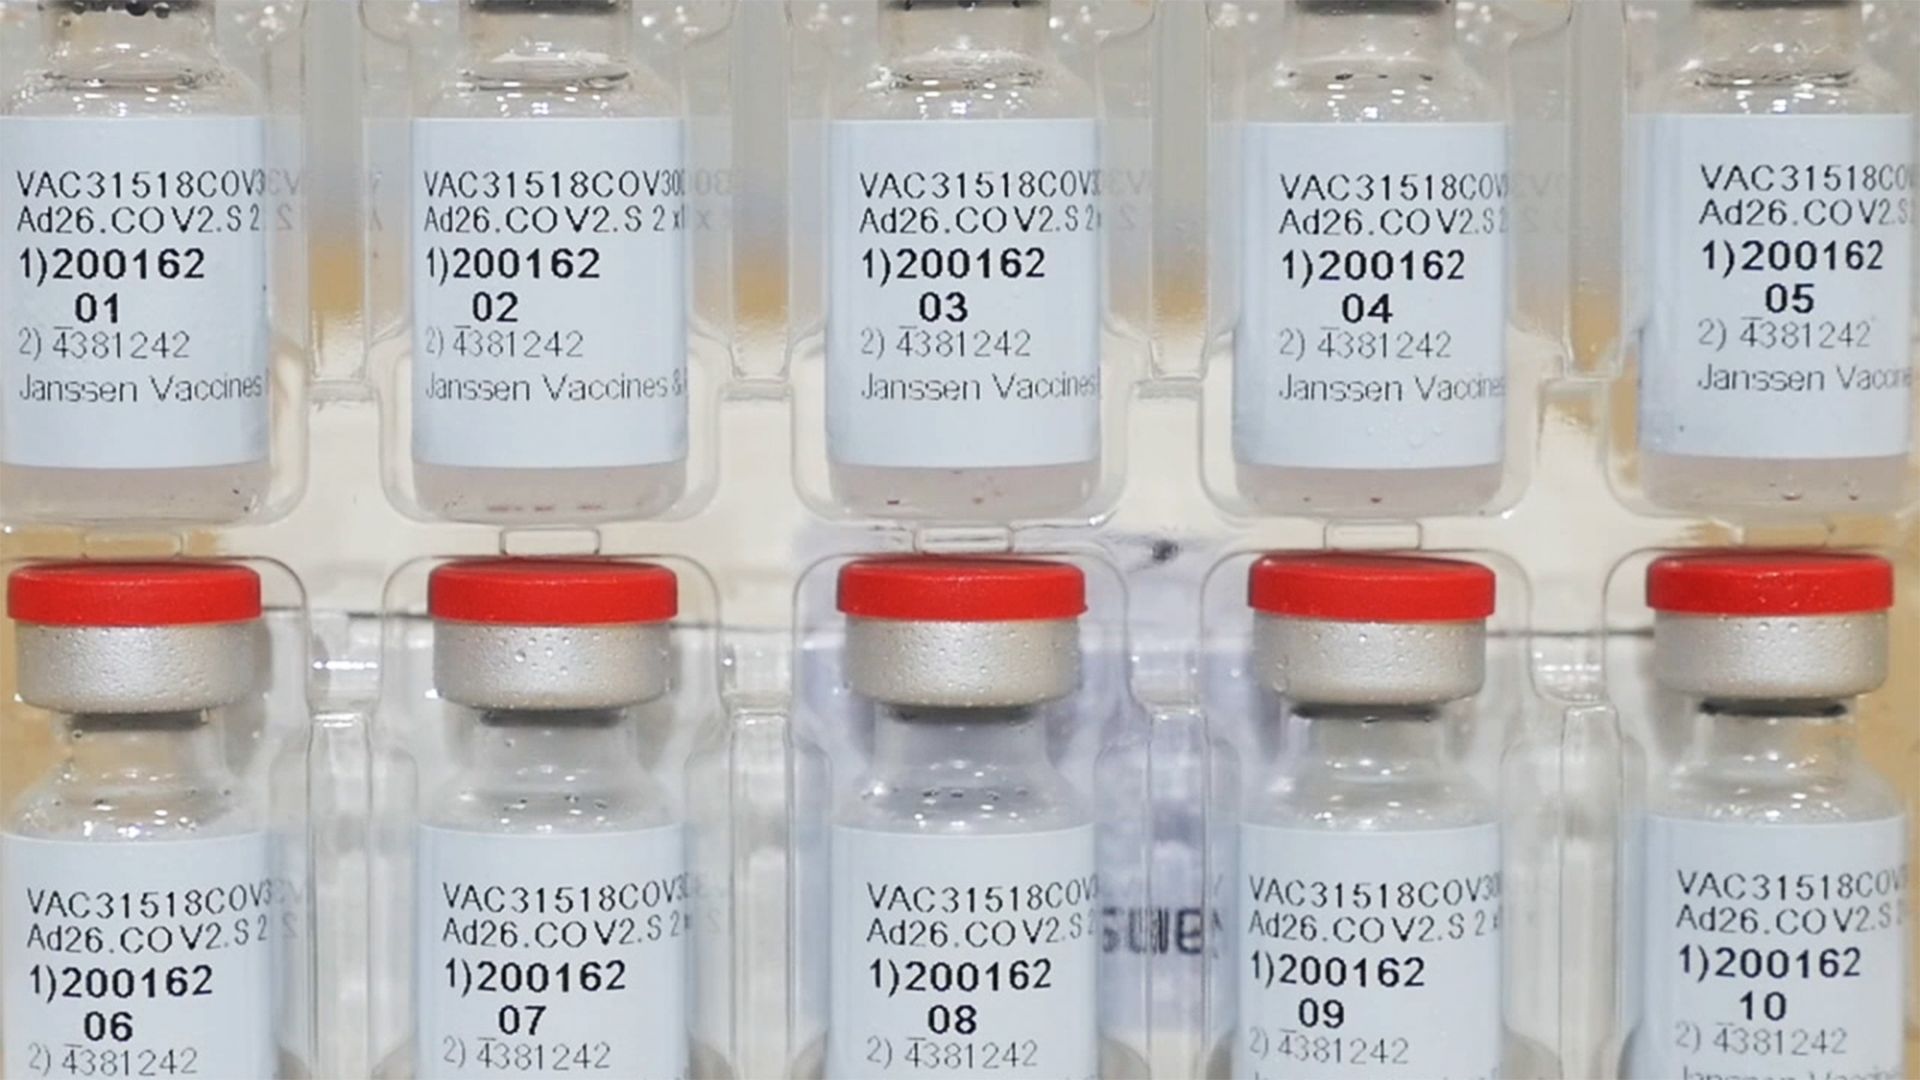 Джонсън енд Джонсън планира да продаде ваксини срещу Ковид-19 за 2,5 млрд. долара през 2021 г.